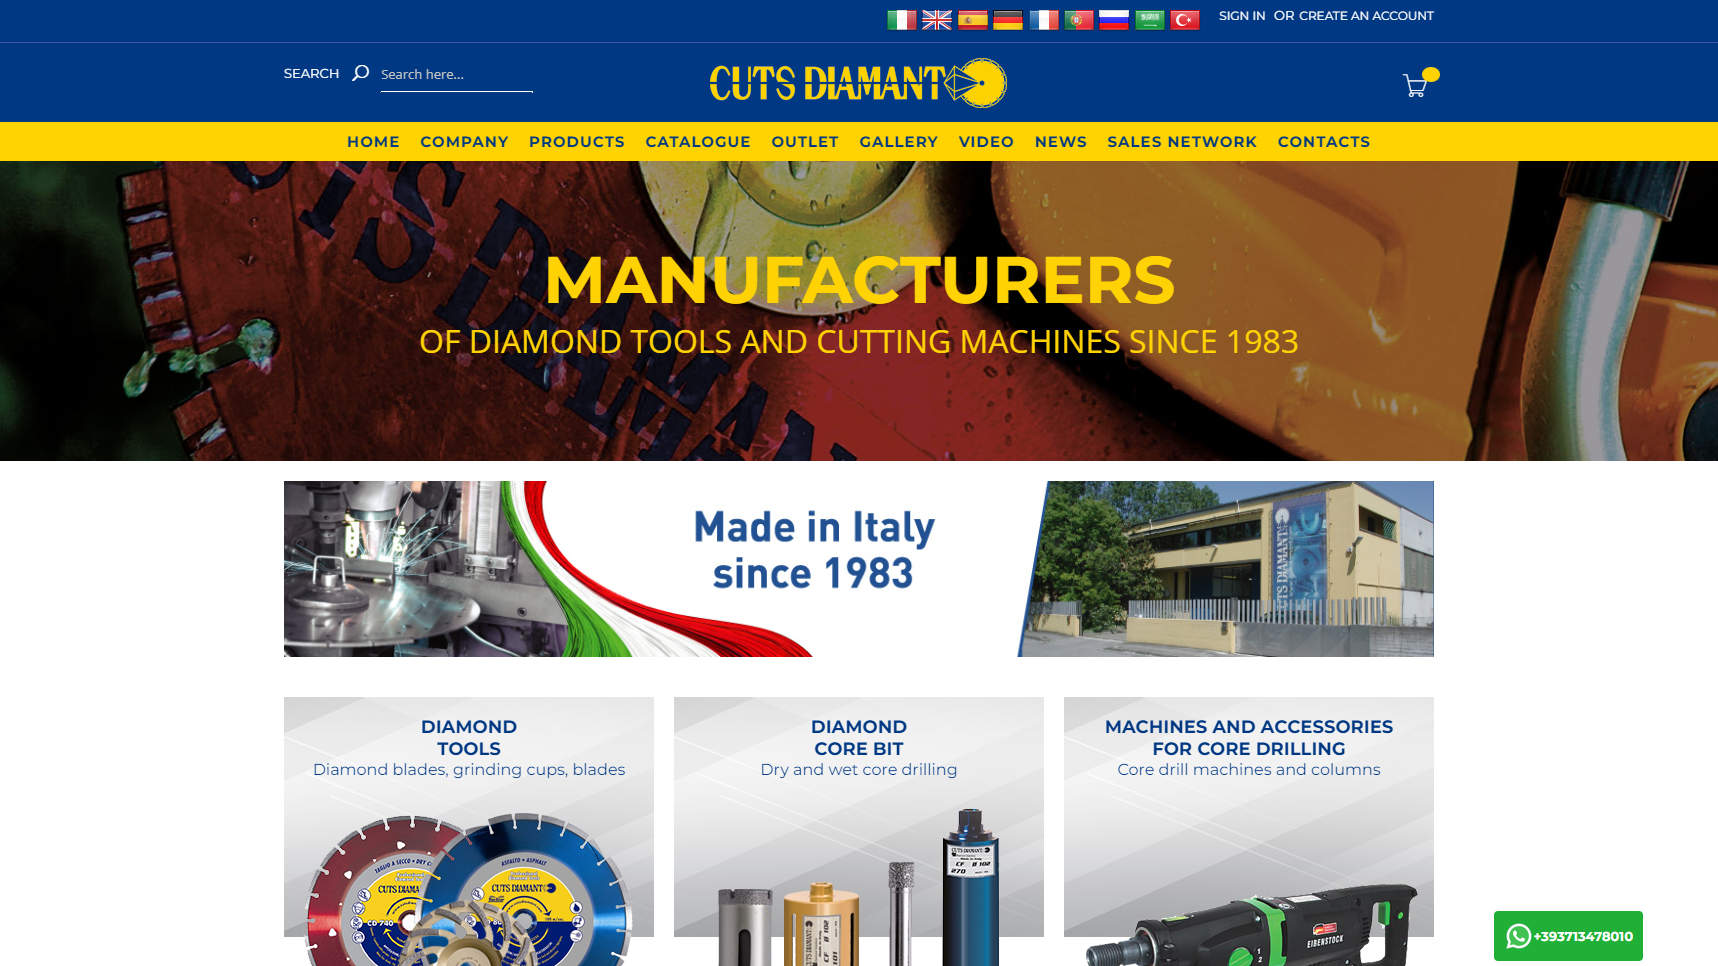 Cuts Diamant - Diamond Tools Manufacturer